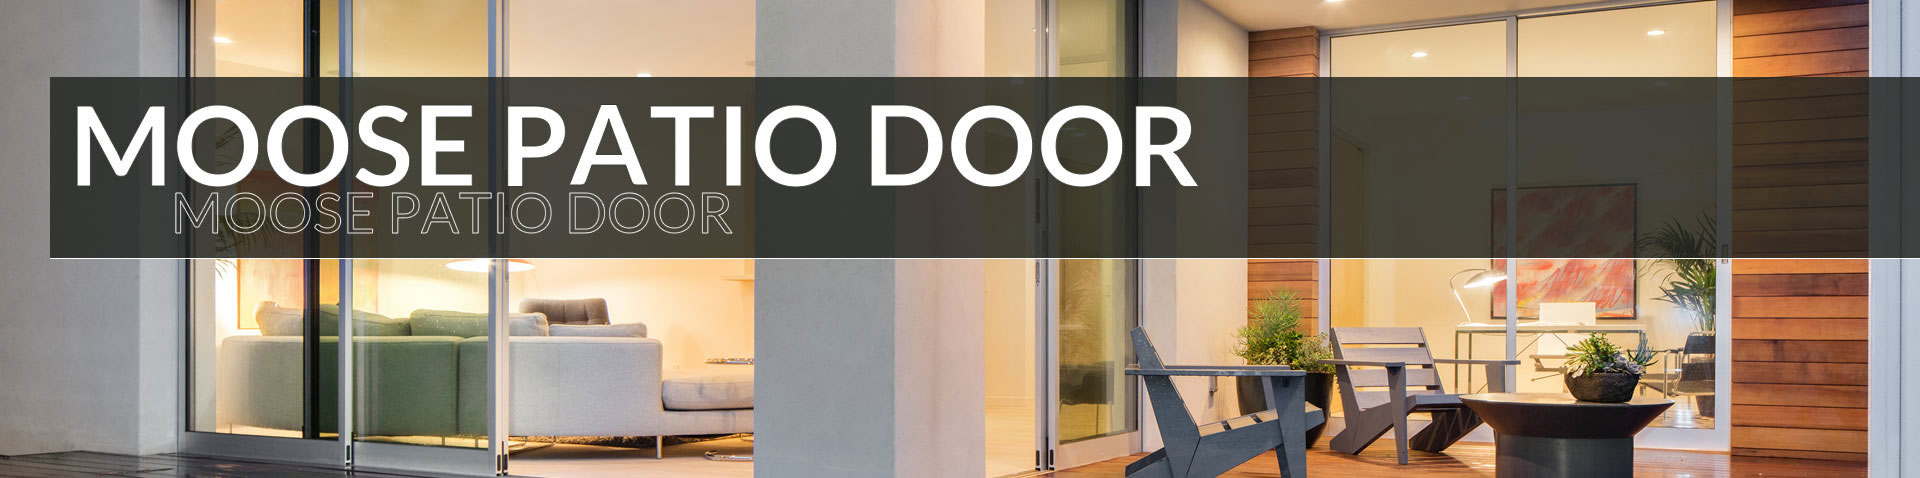 The Moose Patio Doors - Turkstra Windows & Doors